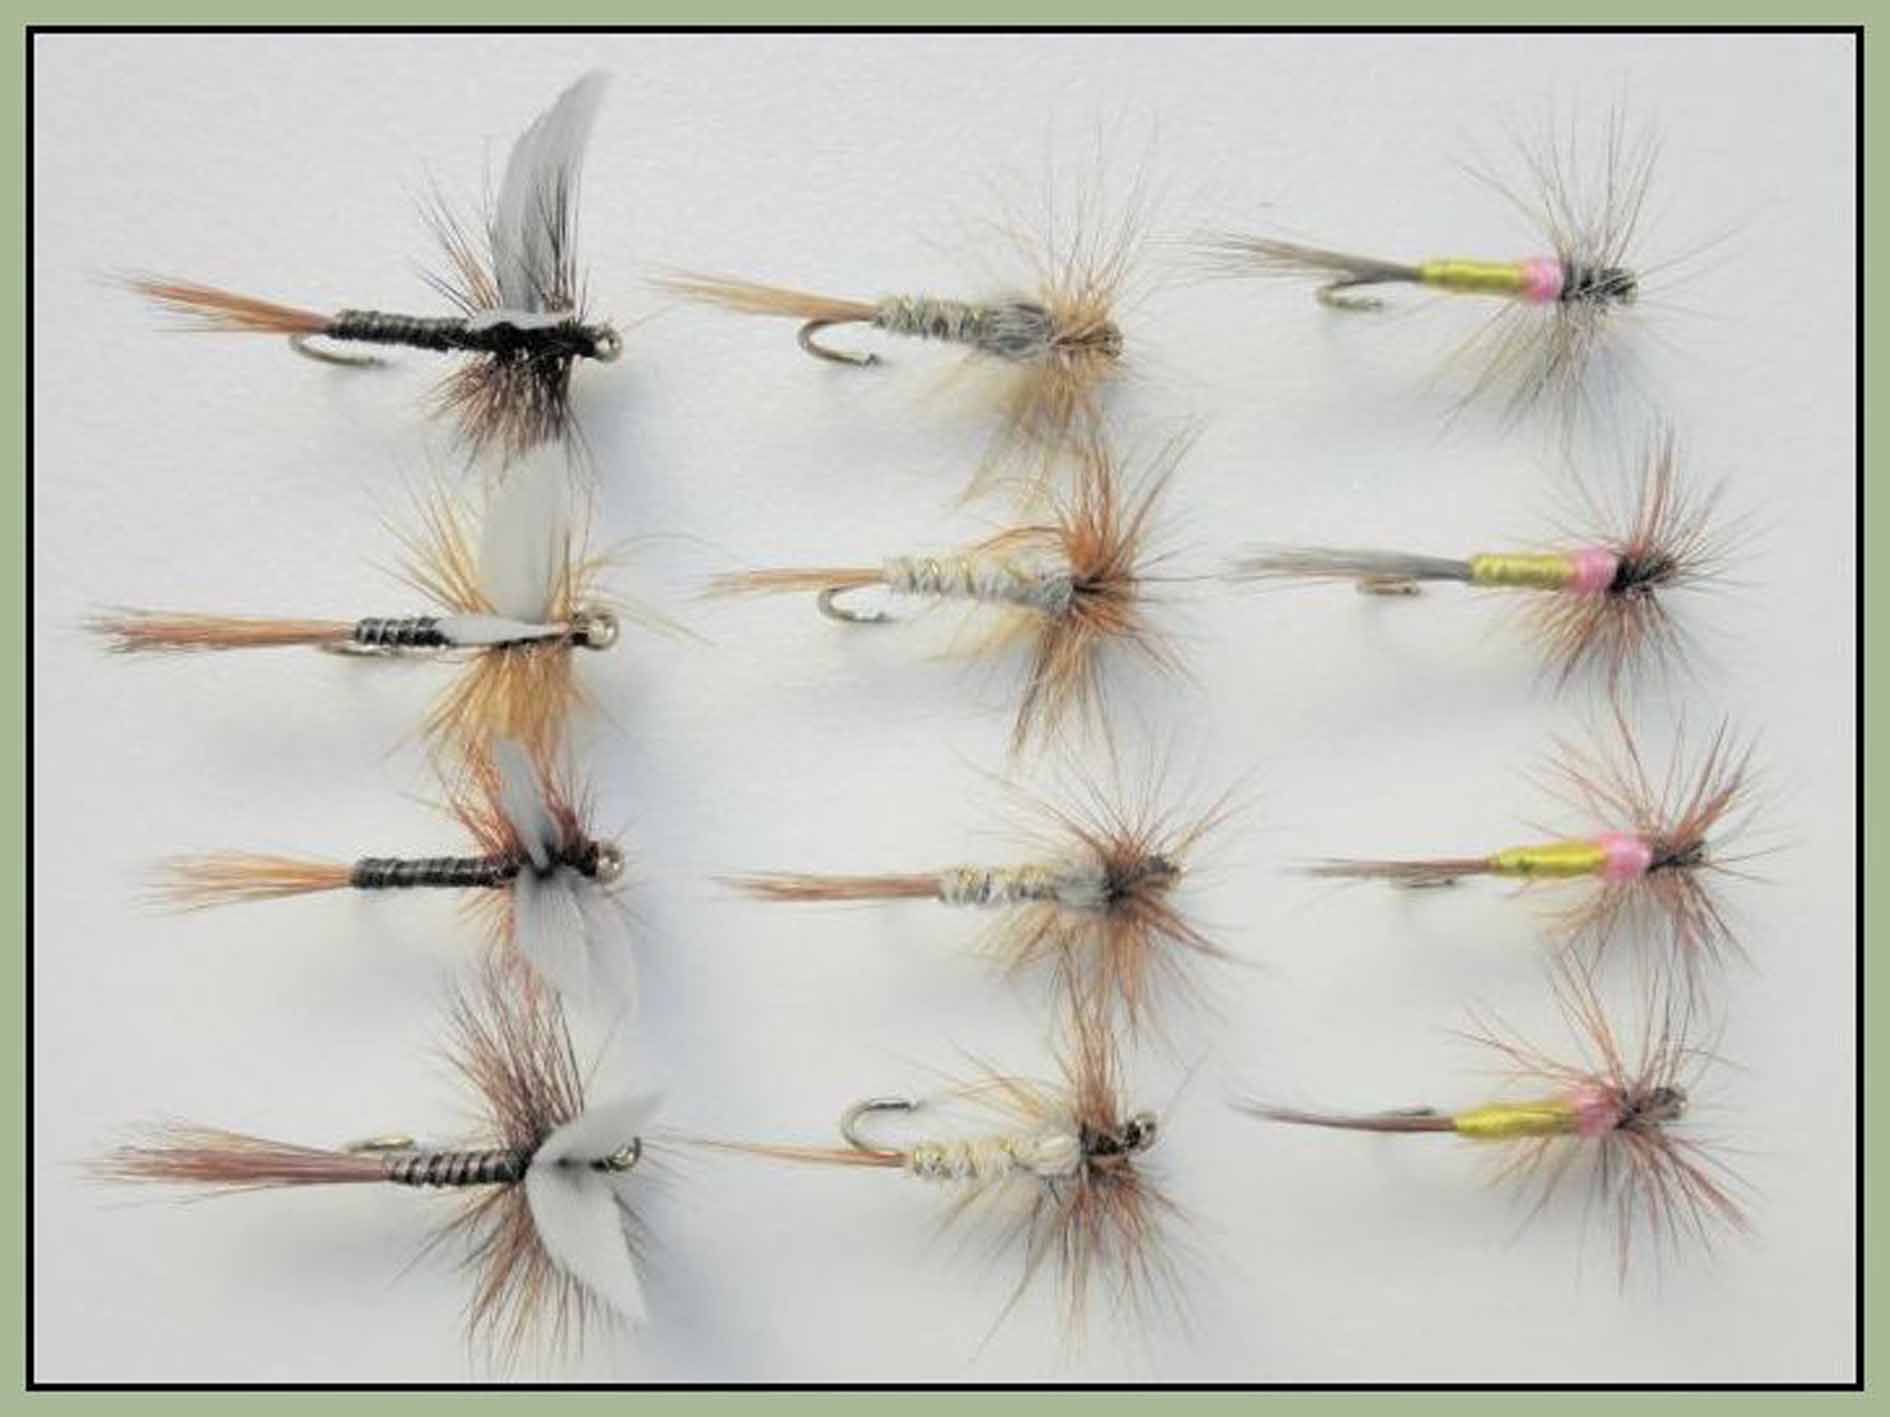 dry trout fishing flies multi pack of 12 flies - Troutflies UK